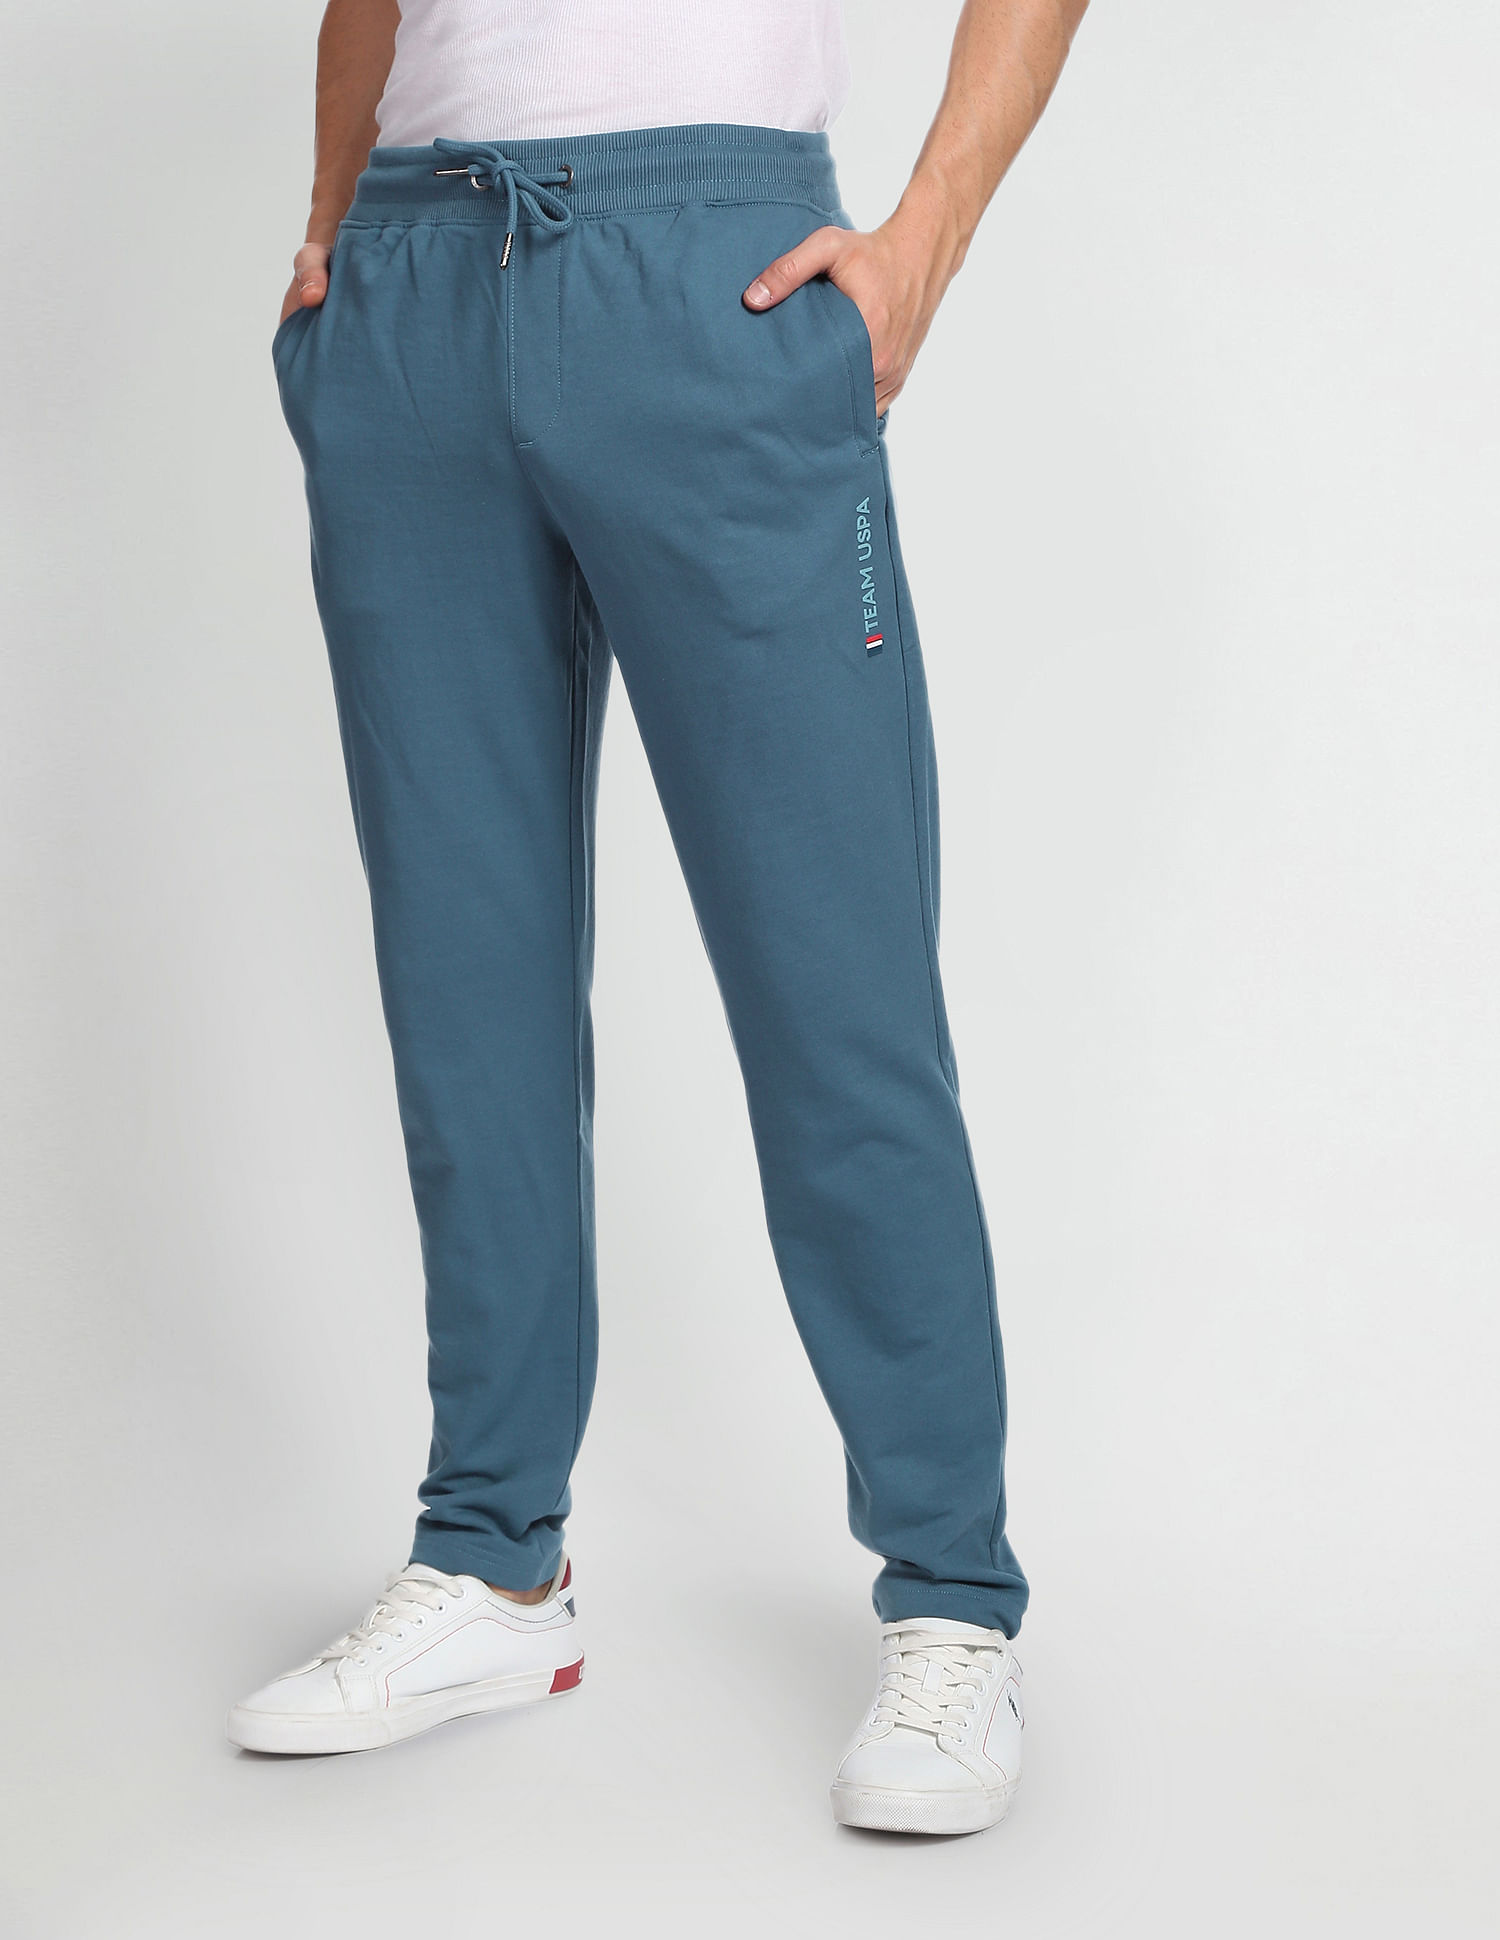 Alcis Men Charcoal Grey Solid Track Pants MTPMA210152-S